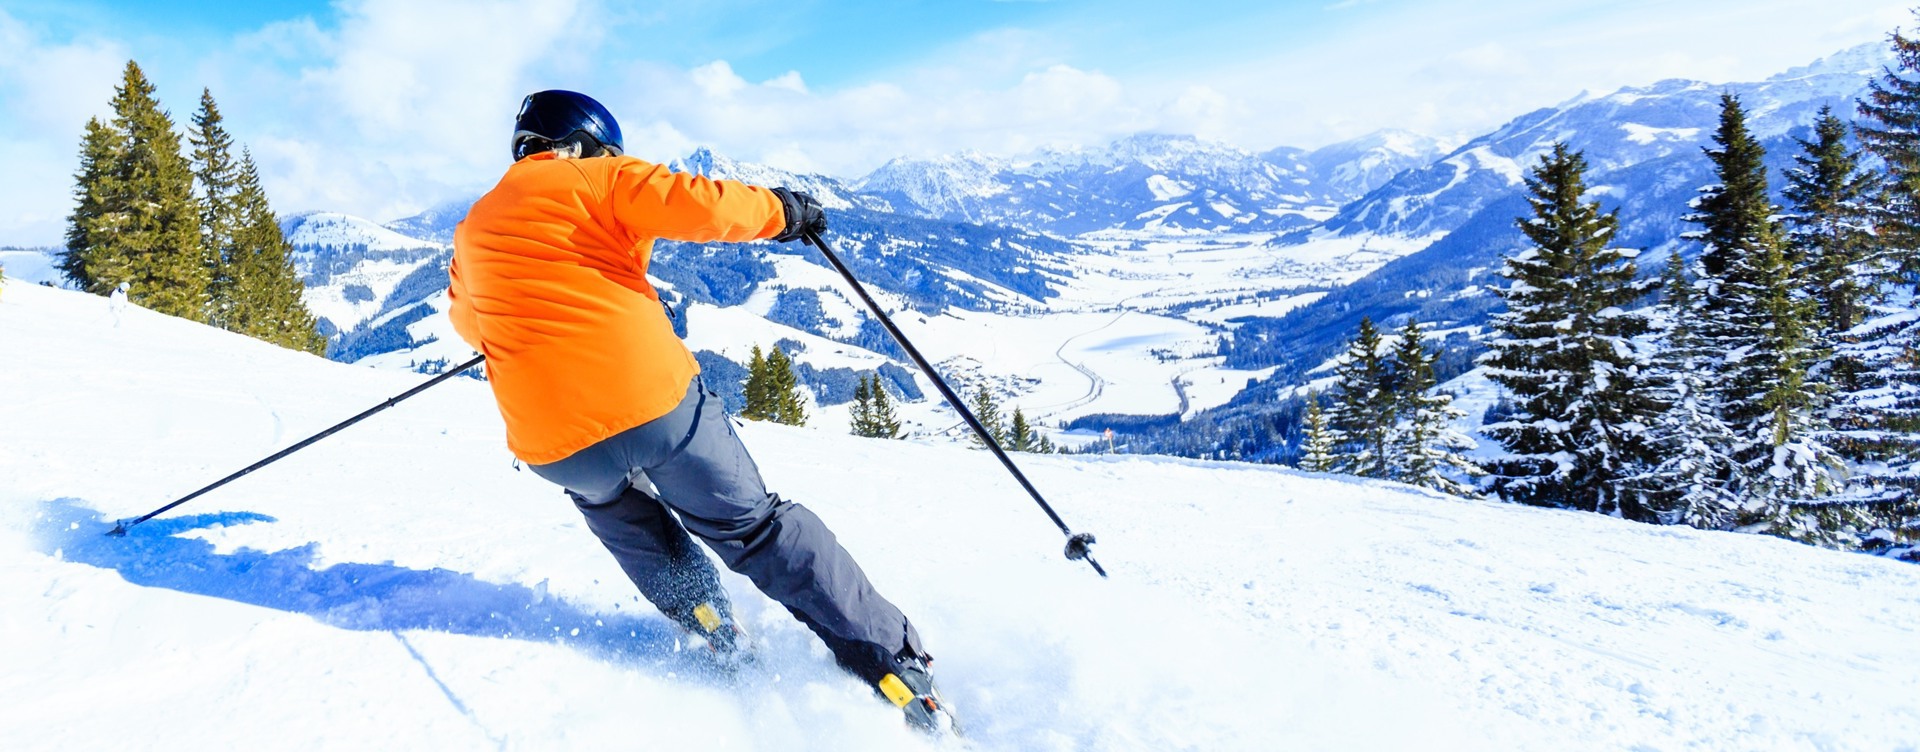 Veelzijdig skigebied met off-piste mogelijkheden
en een kindvriendelijk skigebied